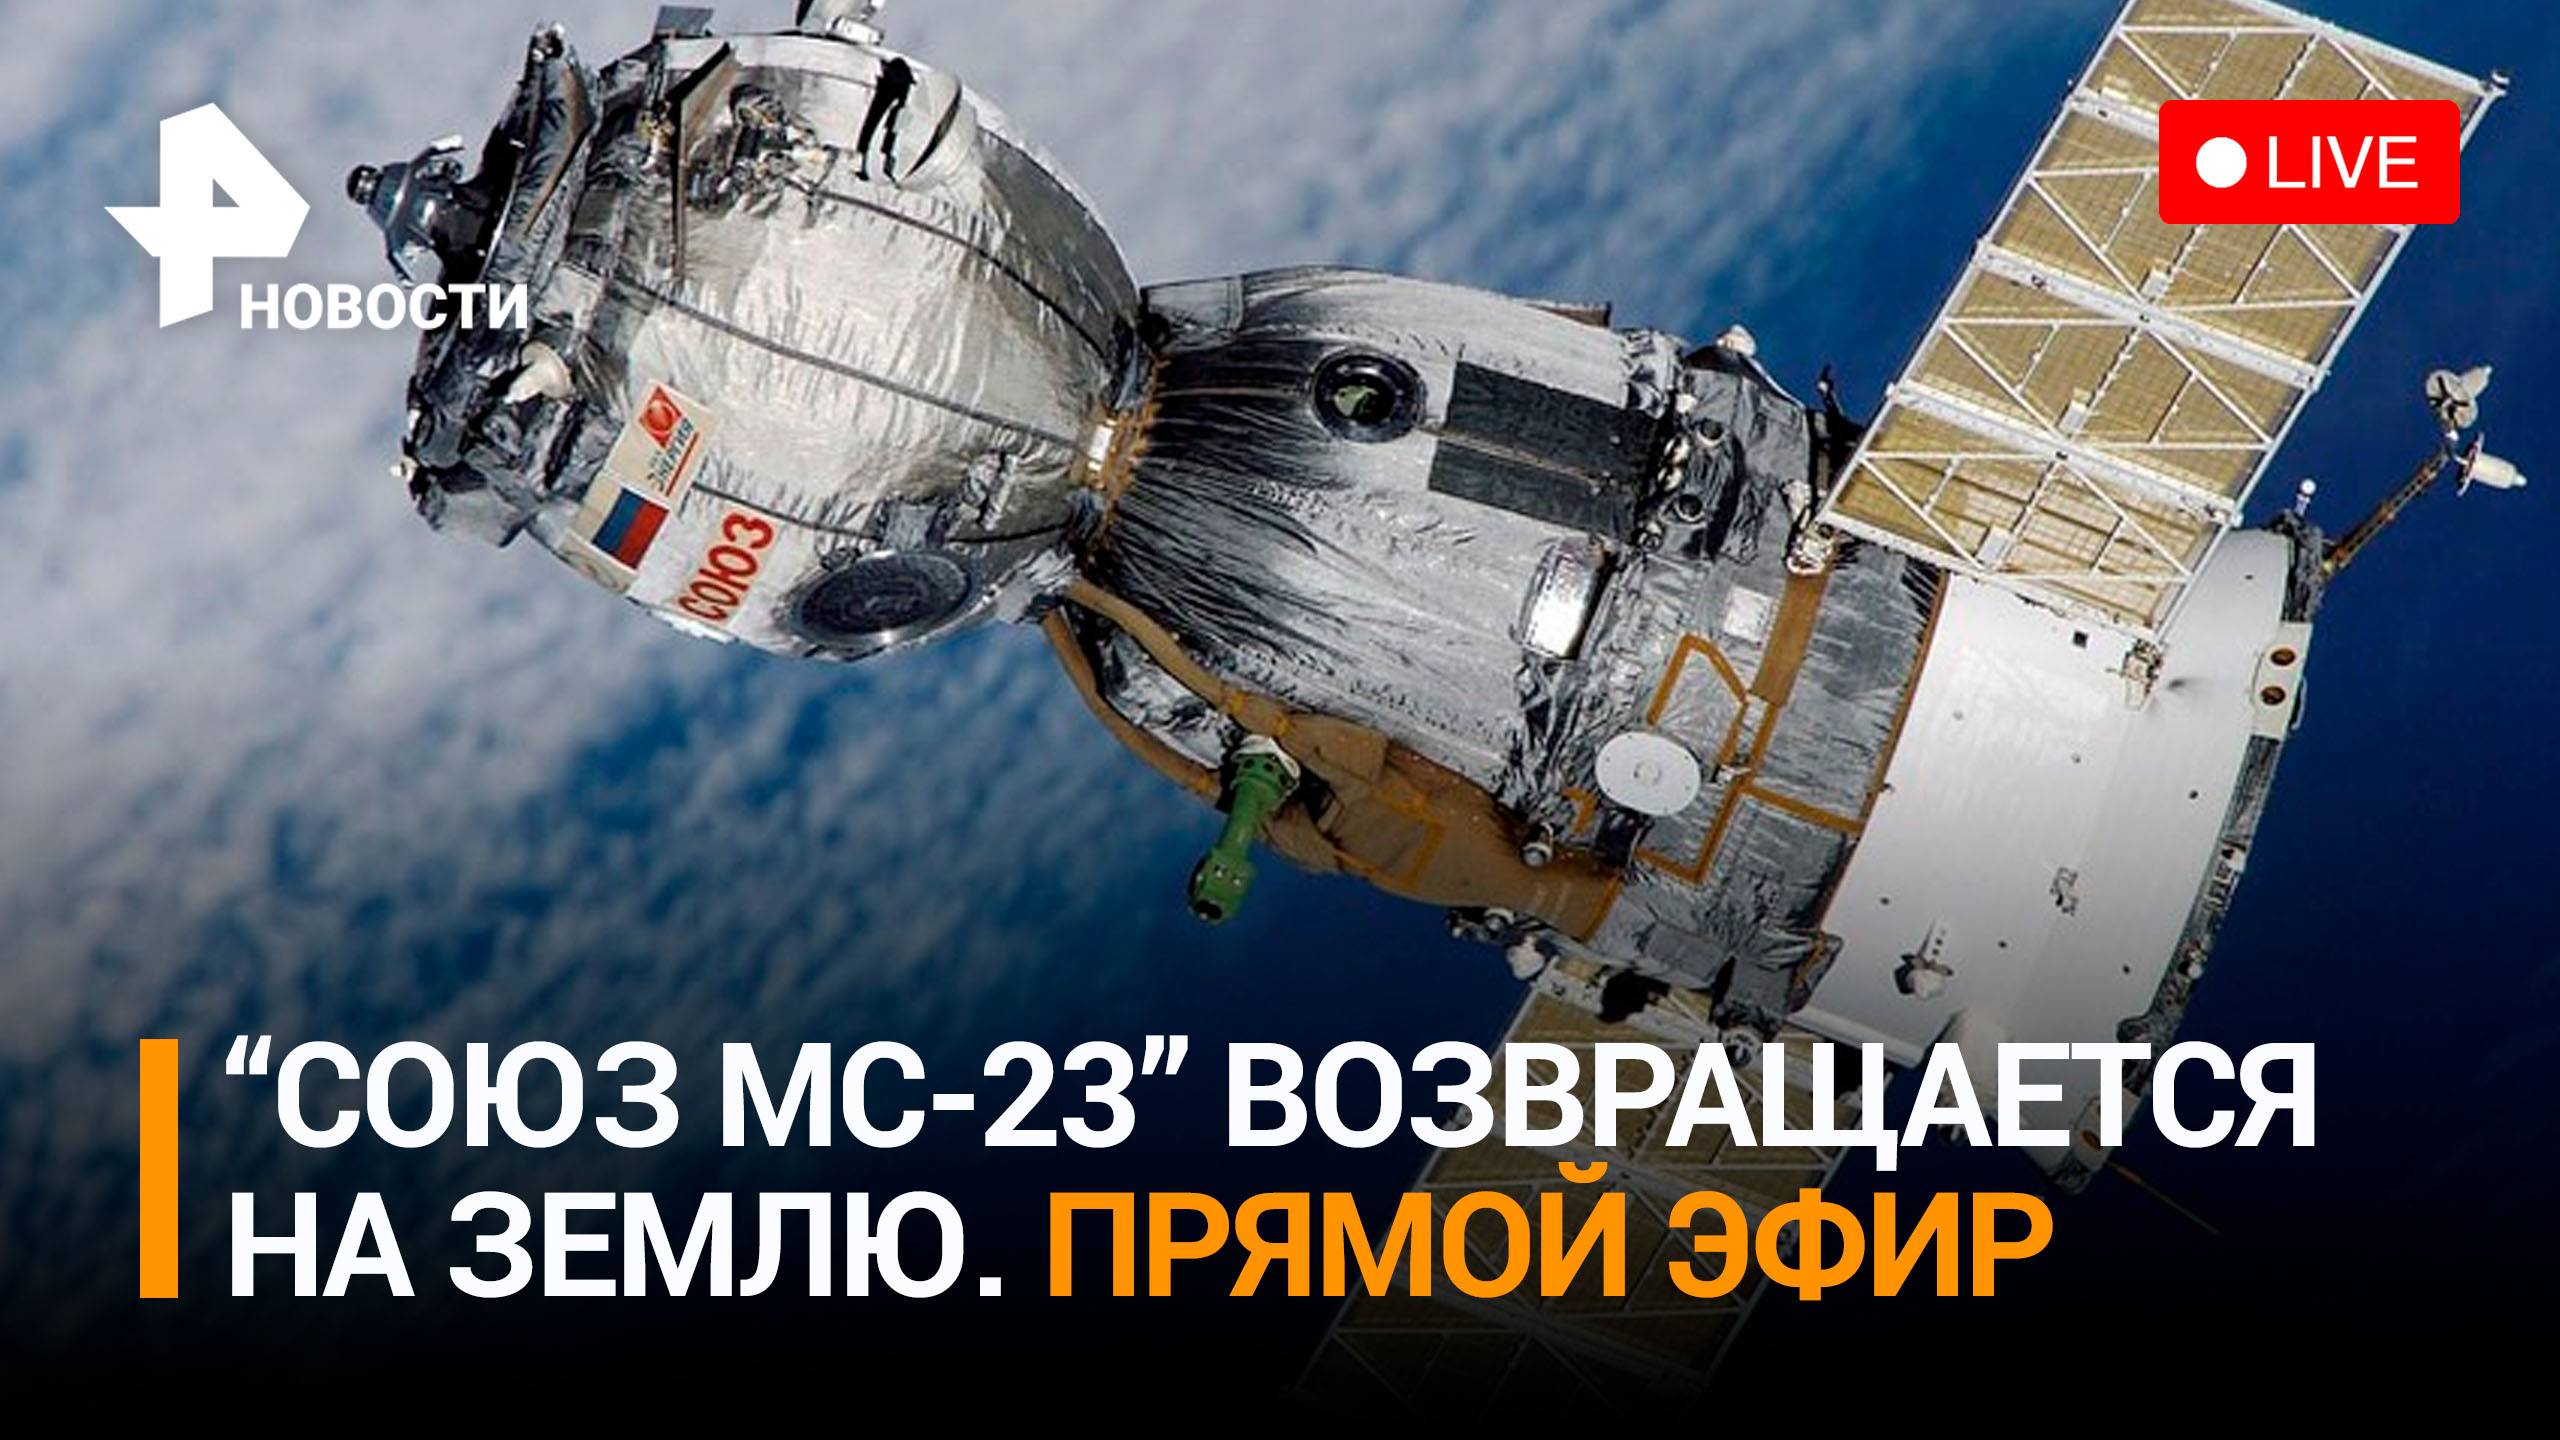 «Союз МС-23» отстыковался от МКС. Приземление спускаемого аппарата / Прямой эфир